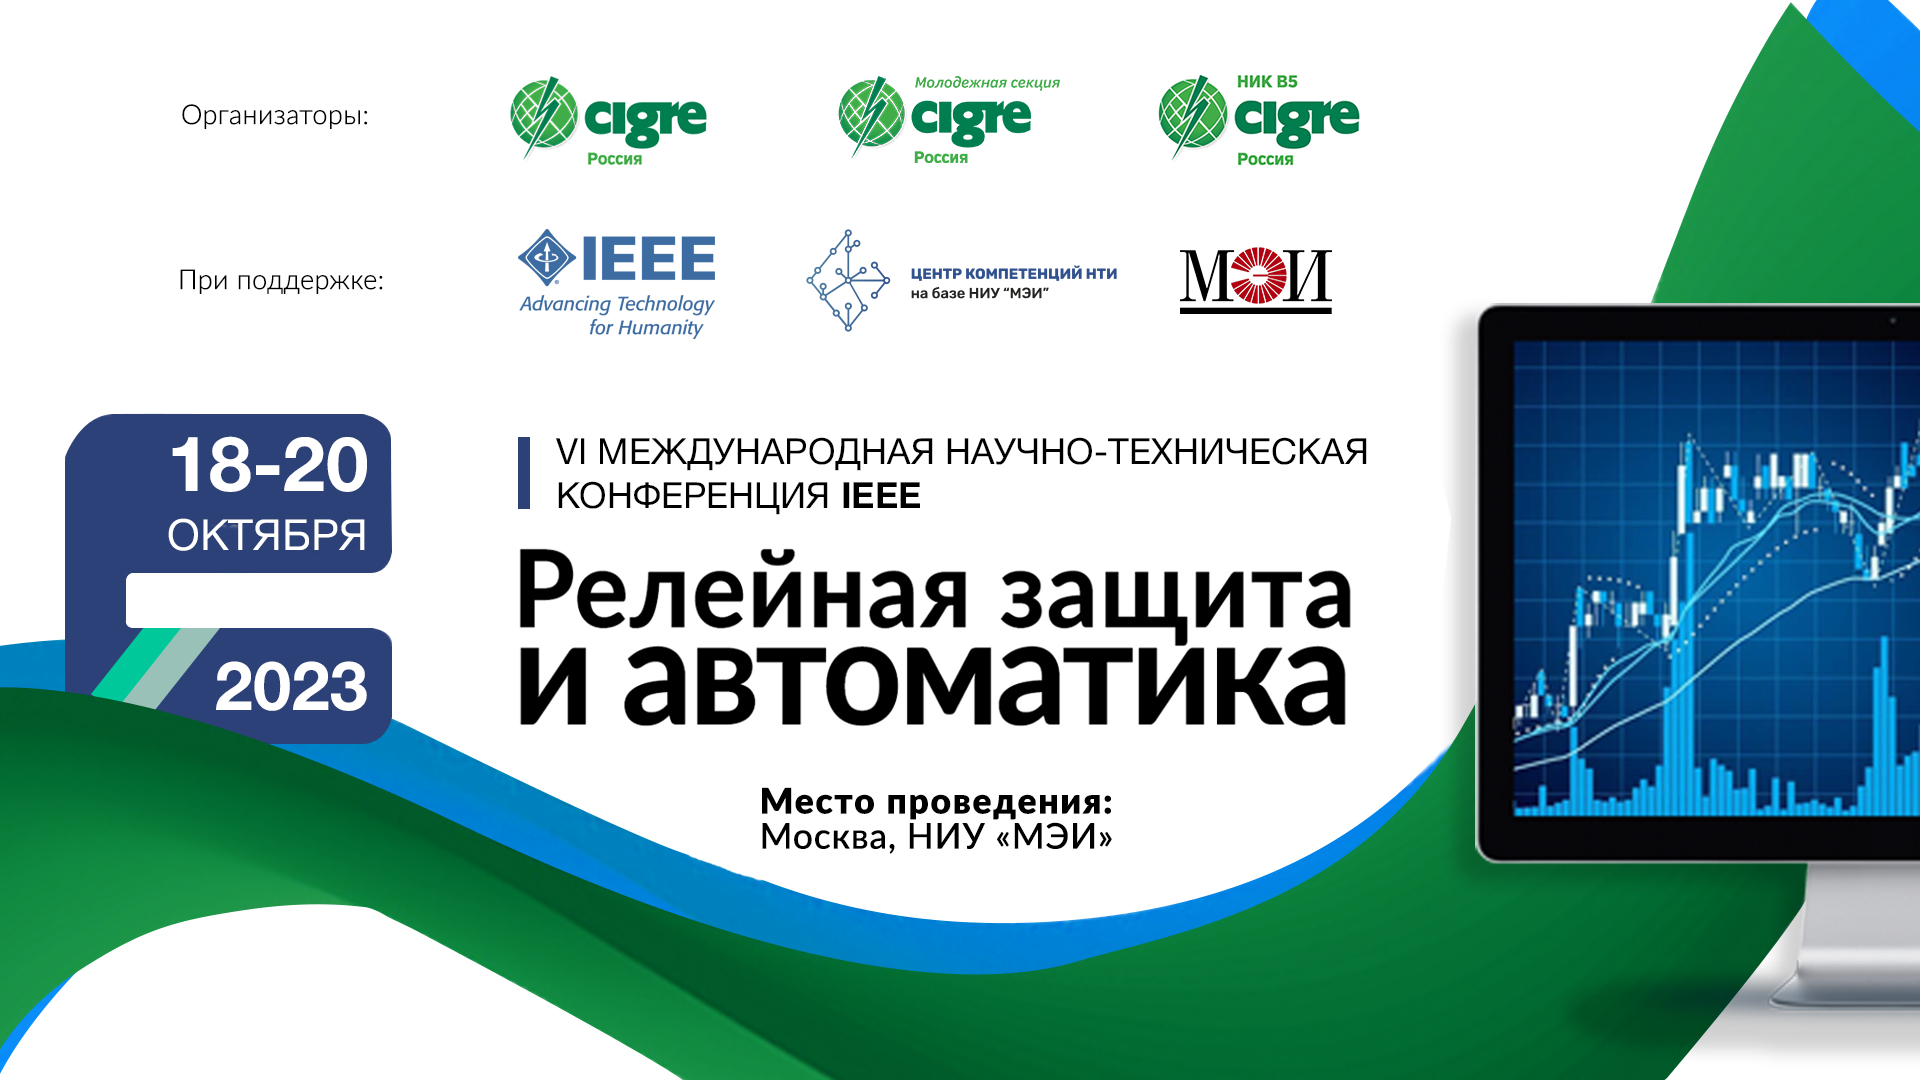 VI Международная научно-техническая конференция «Релейная защита и автоматика» пройдёт на базе НИУ «МЭИ» в Москве 18-20 октября 2023 года